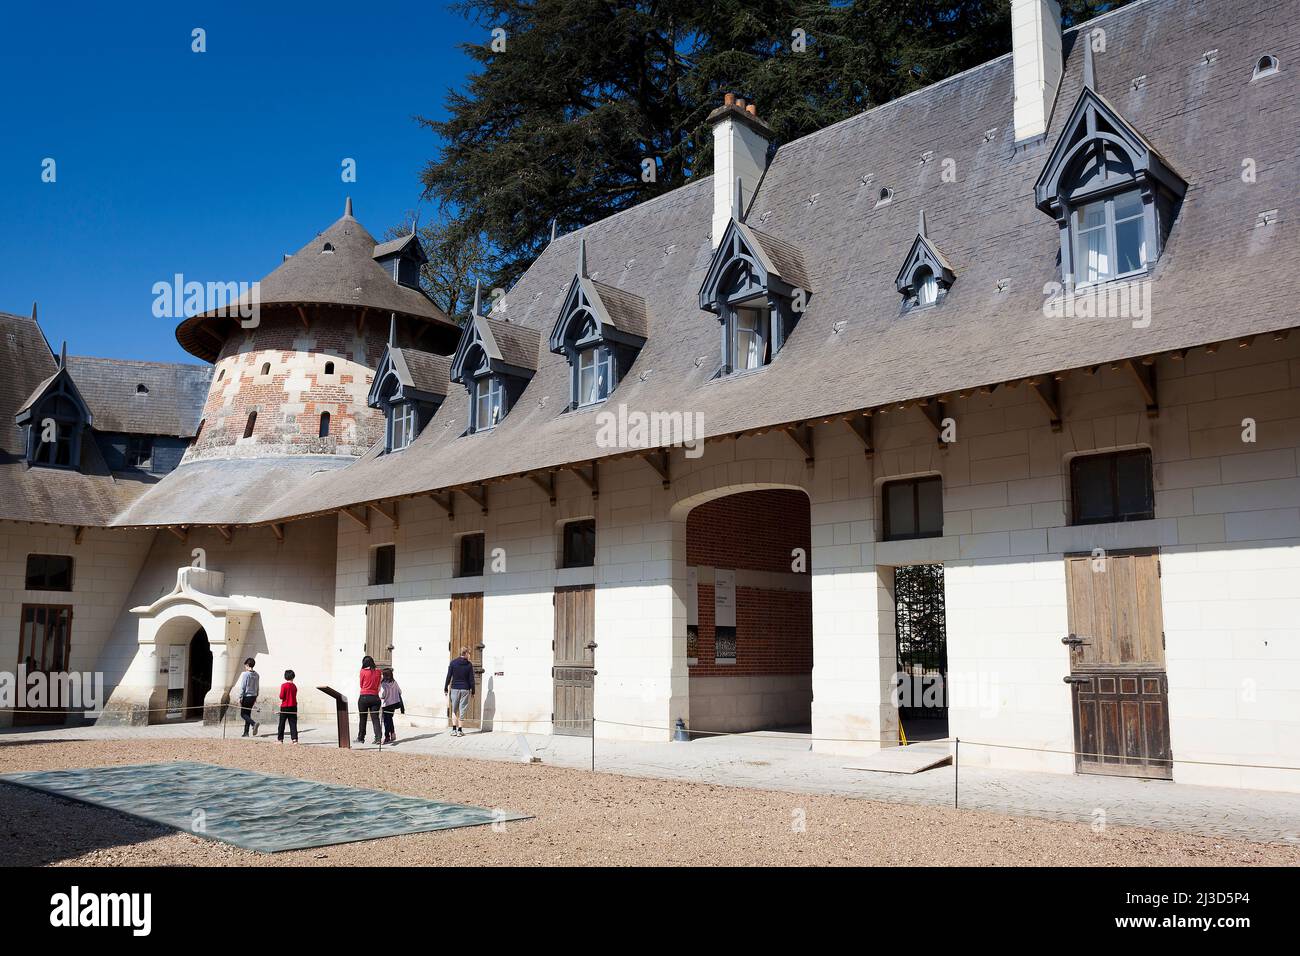 Chaumont castle, Chaumont-sur-Loire, Loir-et-Cher, Centre-Val de Loire, France Stock Photo